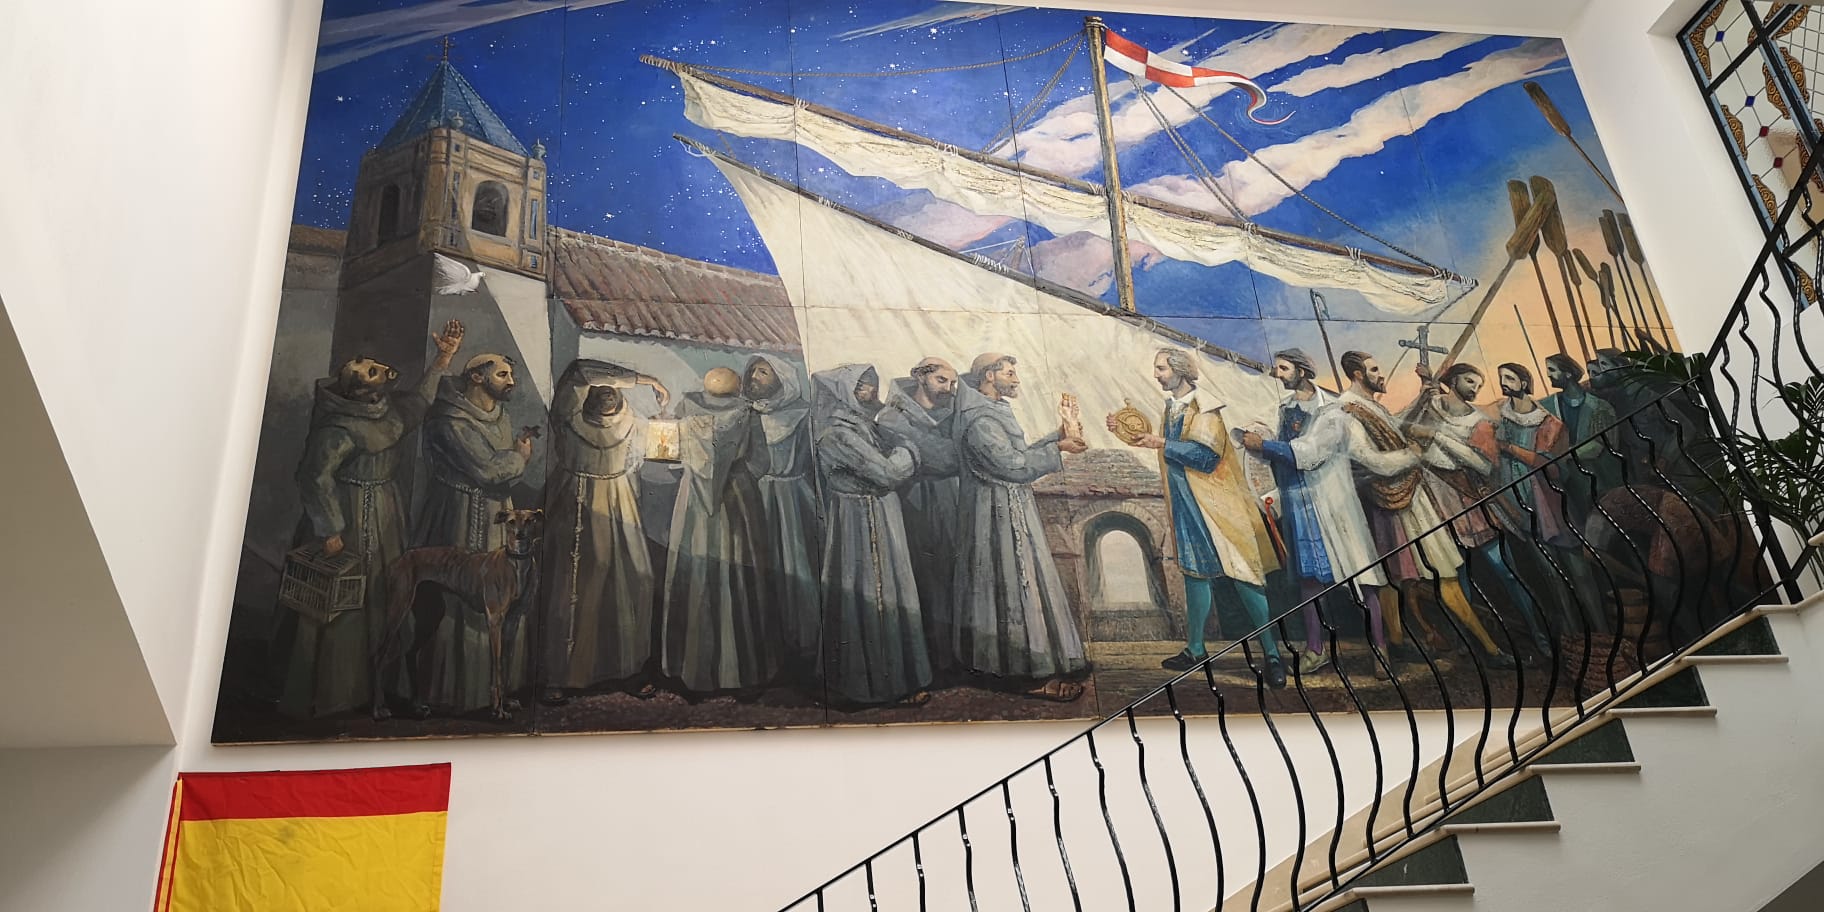 Inauguración Mural la FONTANA, Ayuntamiento de Palos de la Frontera 12-10-2021